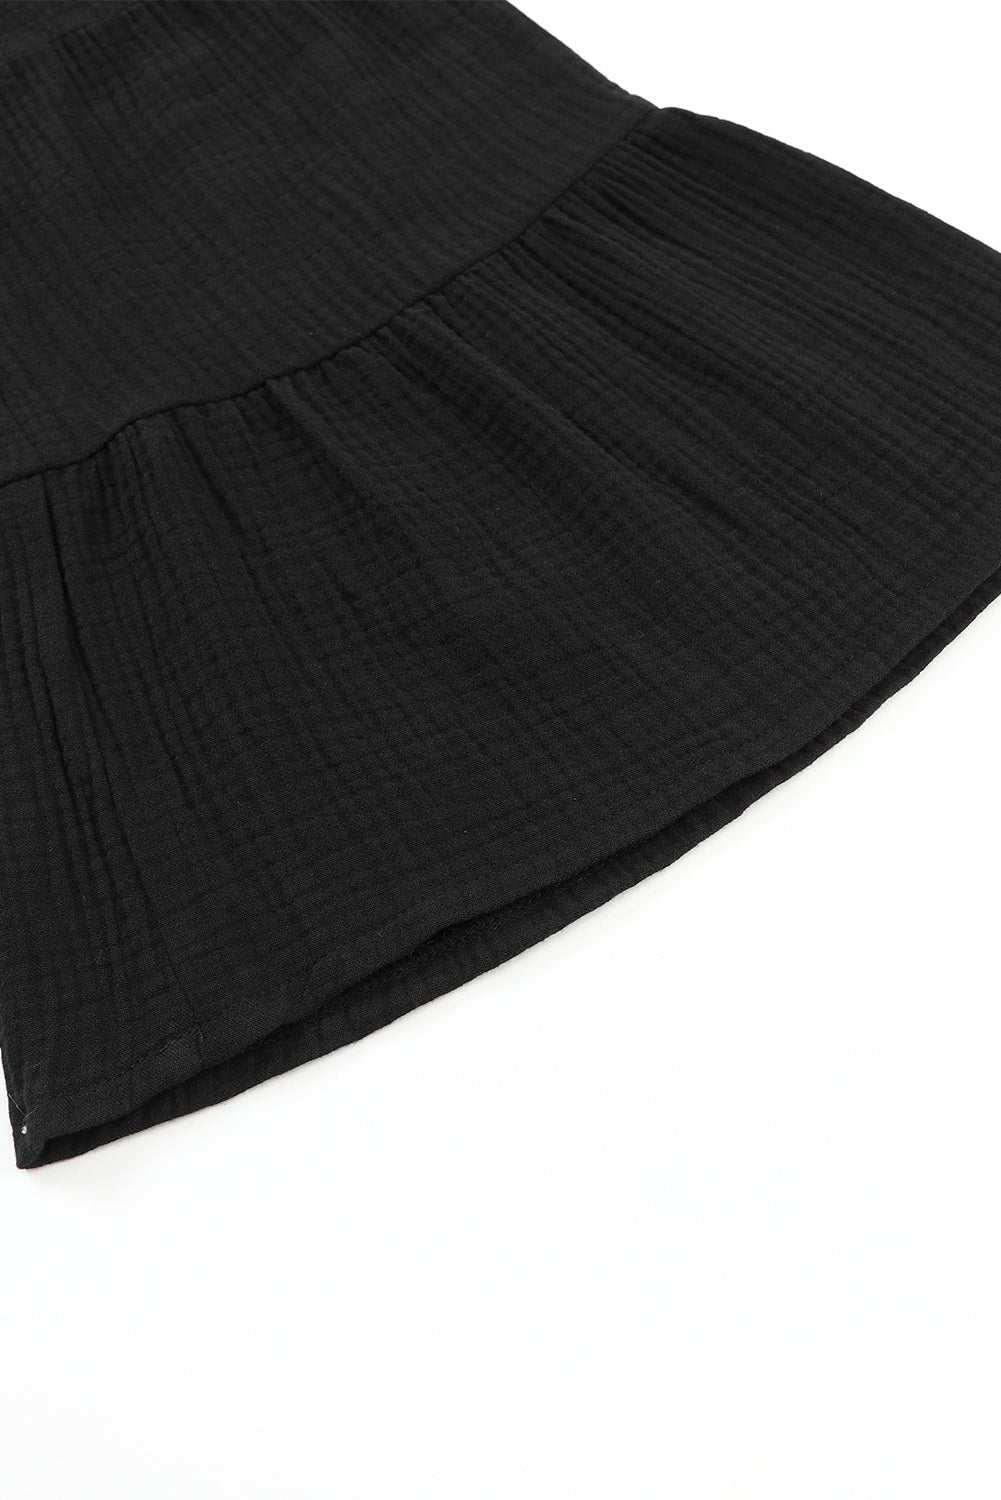 Črne teksturirane hlače na zvonec z visokim pasom in naborki